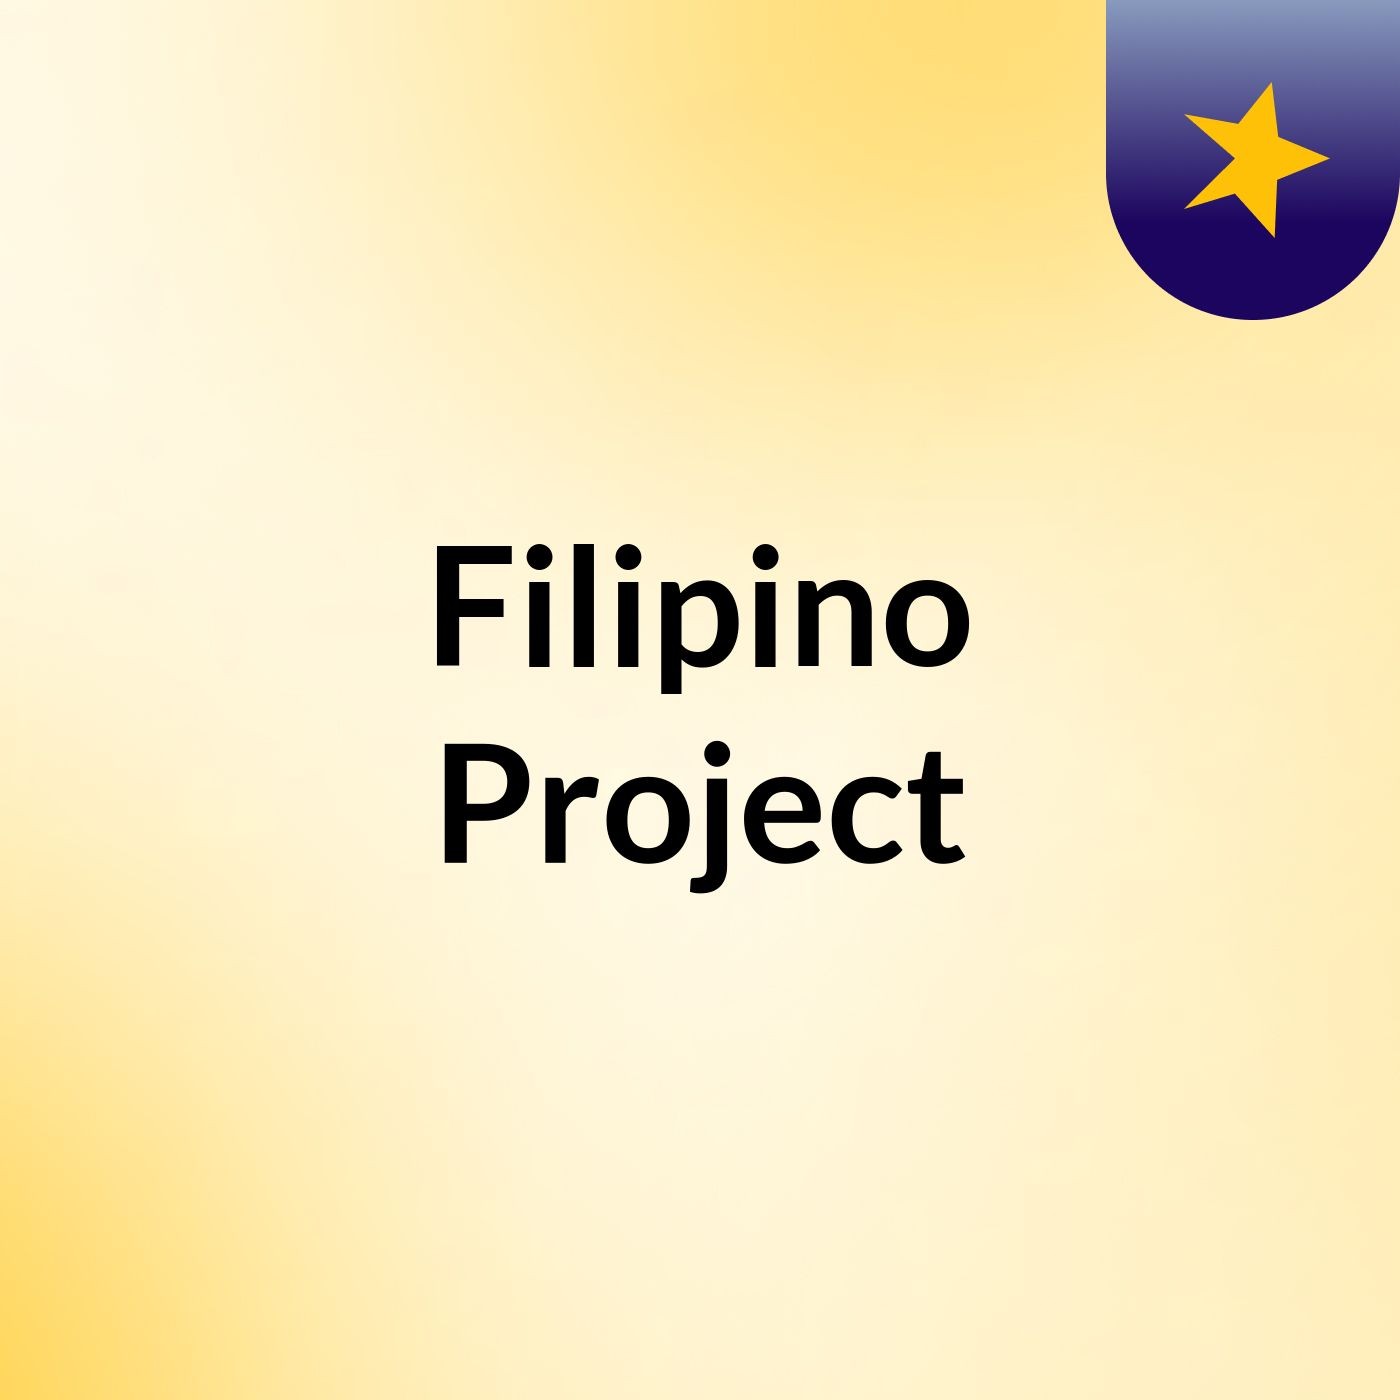 Filipino Project